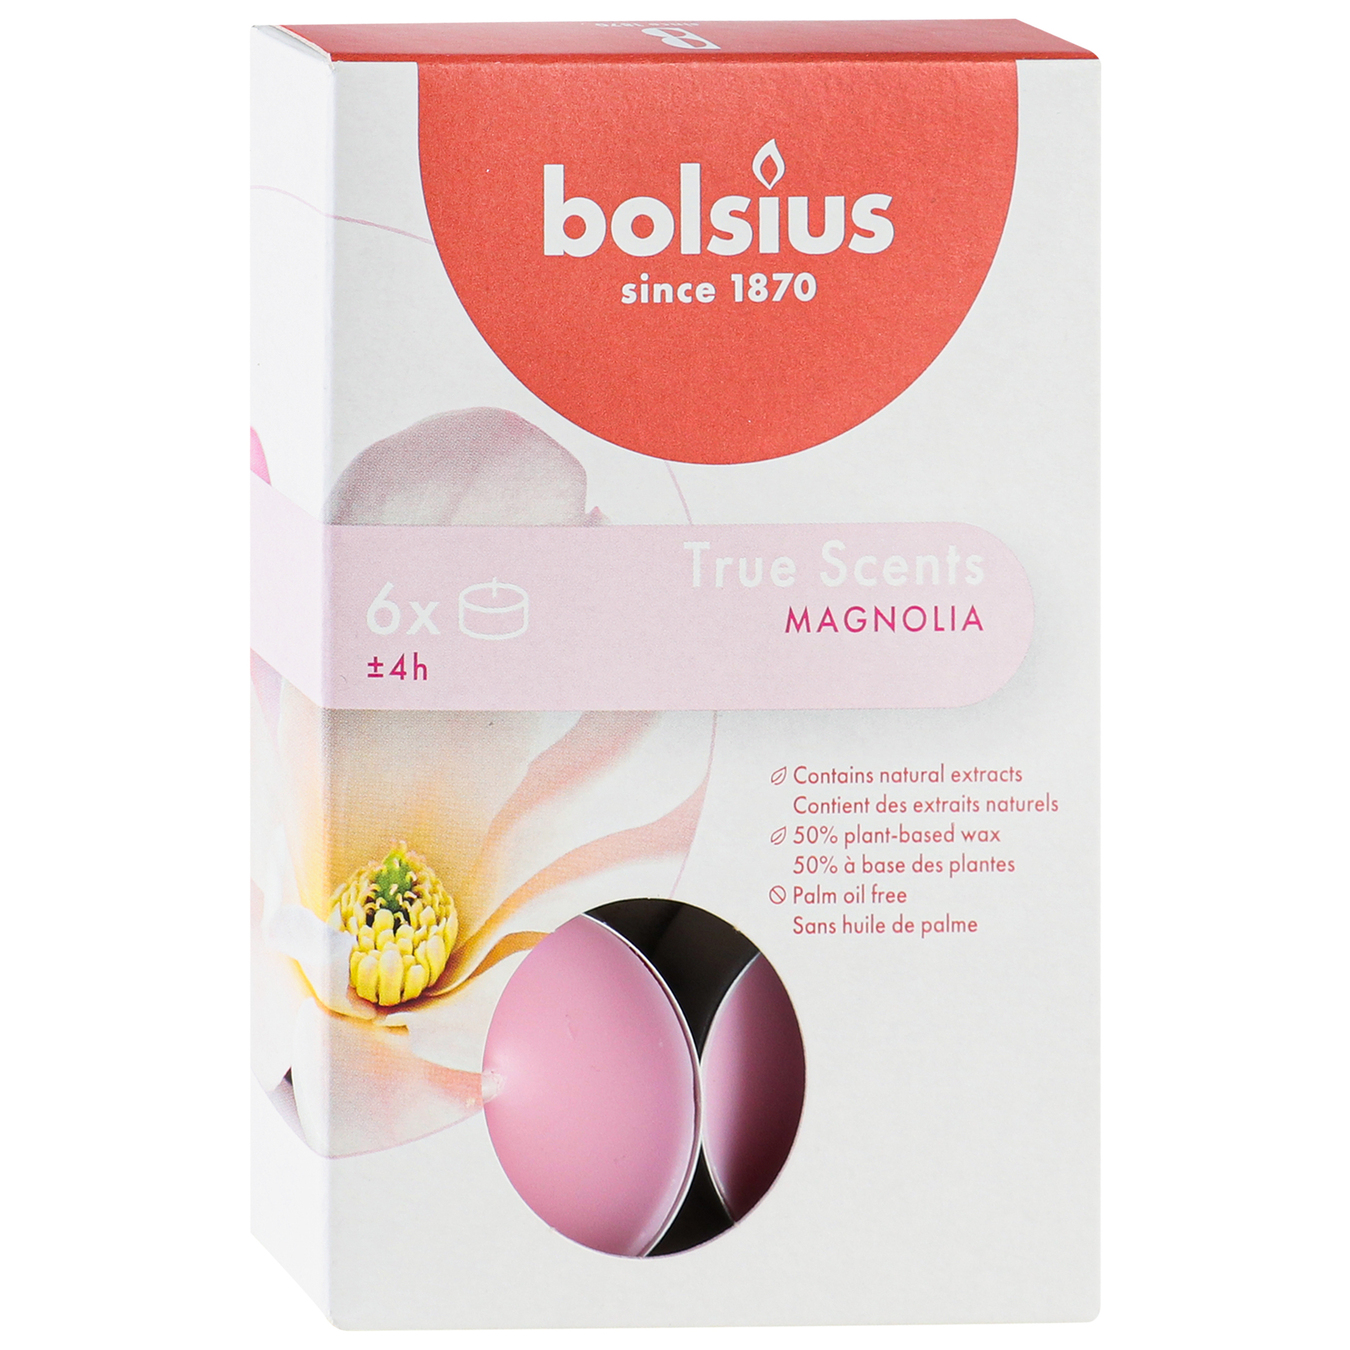 Bolsius True Scents Magnolia Candle 6pcs 2